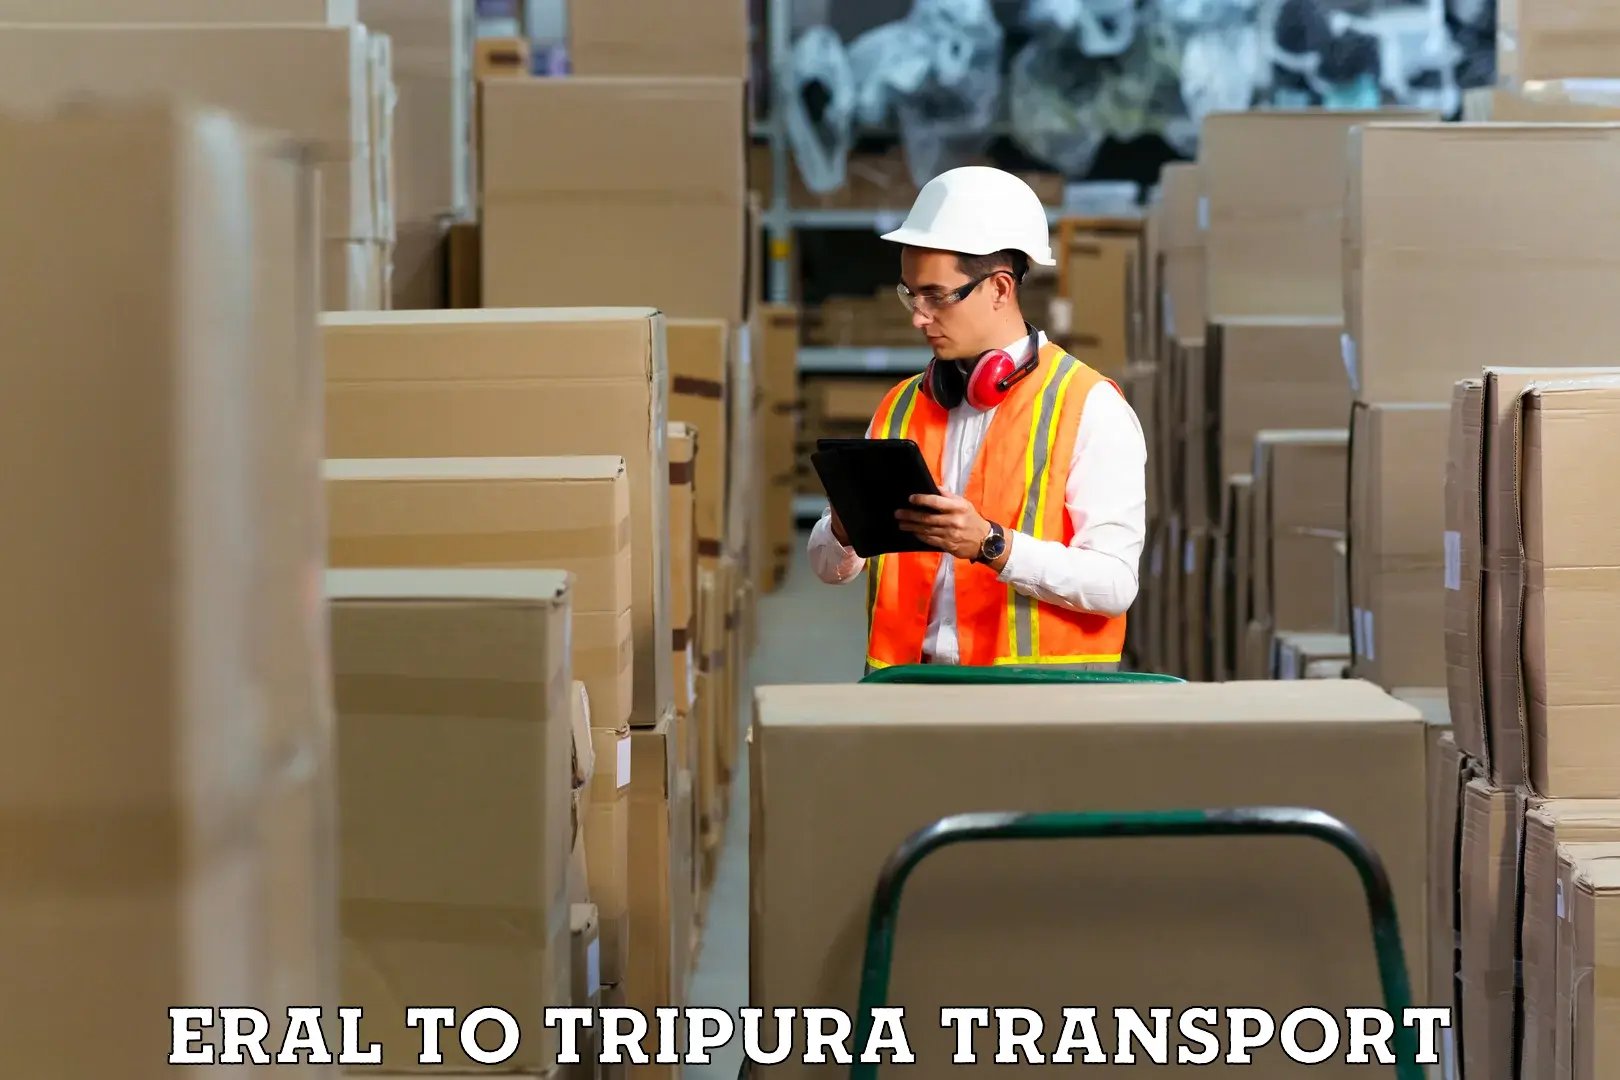 Online transport service Eral to Udaipur Tripura